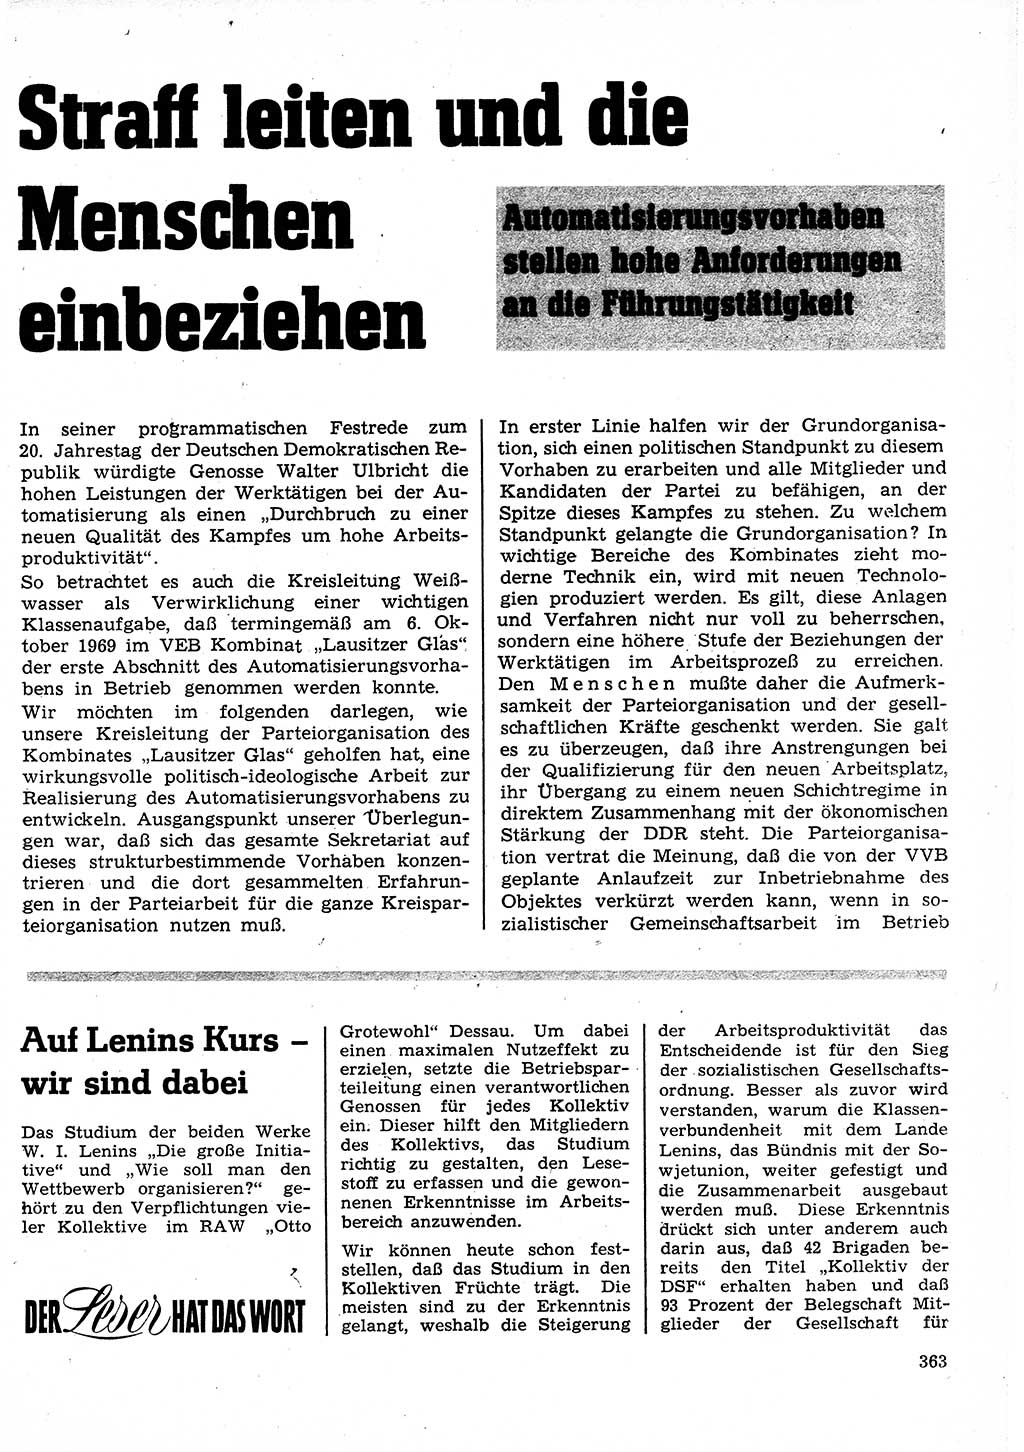 Neuer Weg (NW), Organ des Zentralkomitees (ZK) der SED (Sozialistische Einheitspartei Deutschlands) für Fragen des Parteilebens, 25. Jahrgang [Deutsche Demokratische Republik (DDR)] 1970, Seite 363 (NW ZK SED DDR 1970, S. 363)